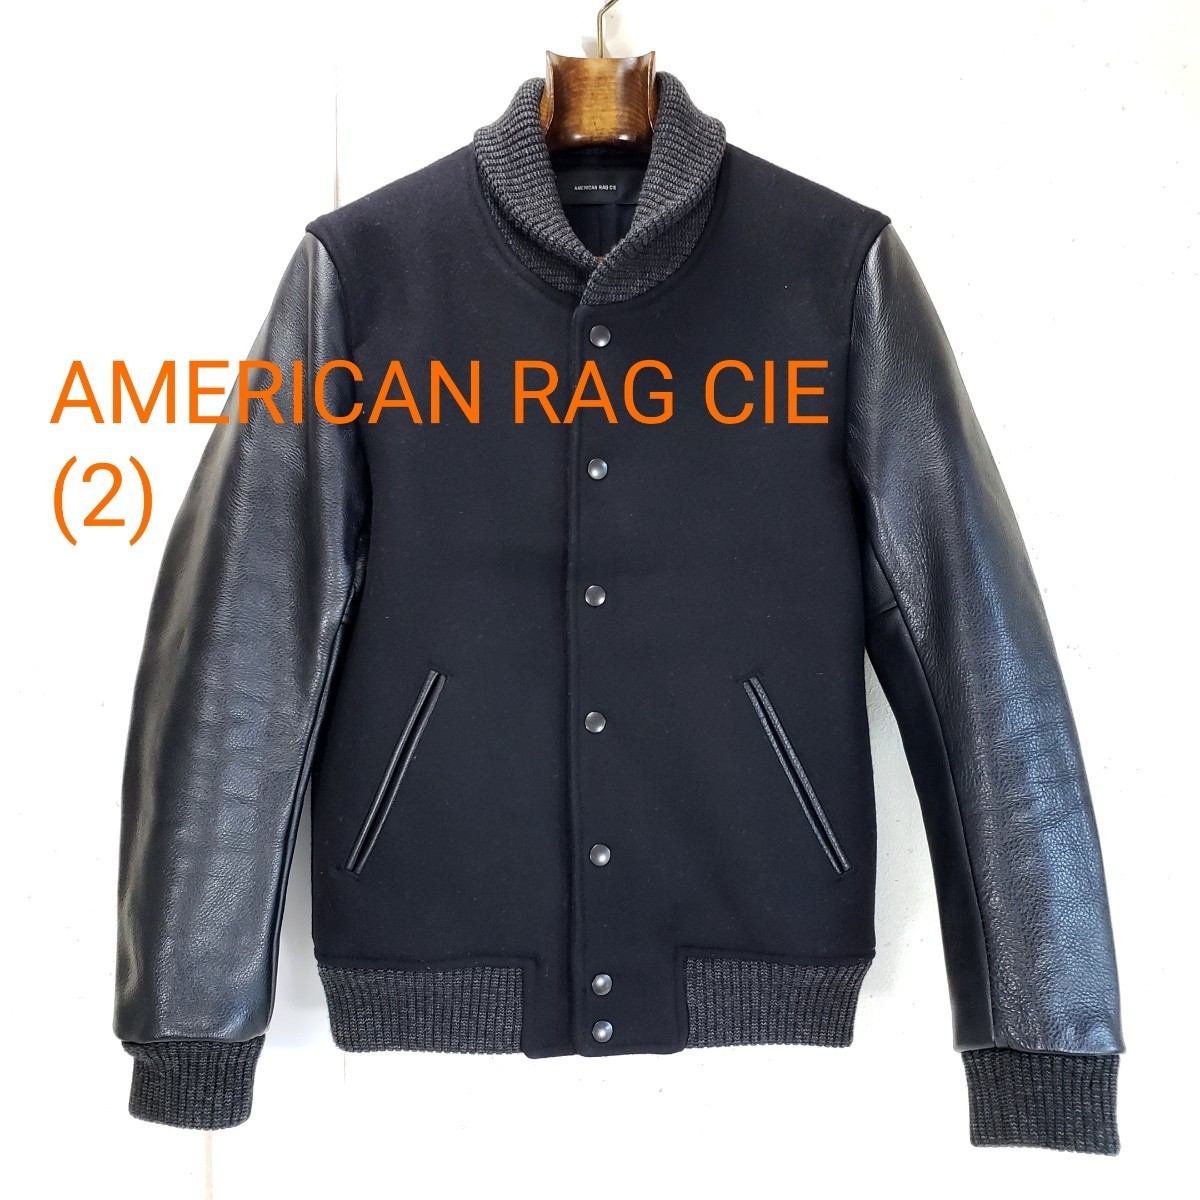 綺麗◆AMERICAN RAG CIE アメリカンラグシー メルトン 牛革 袖革レザー スタジャン メンズ(size 2)黒 ブラック_画像2